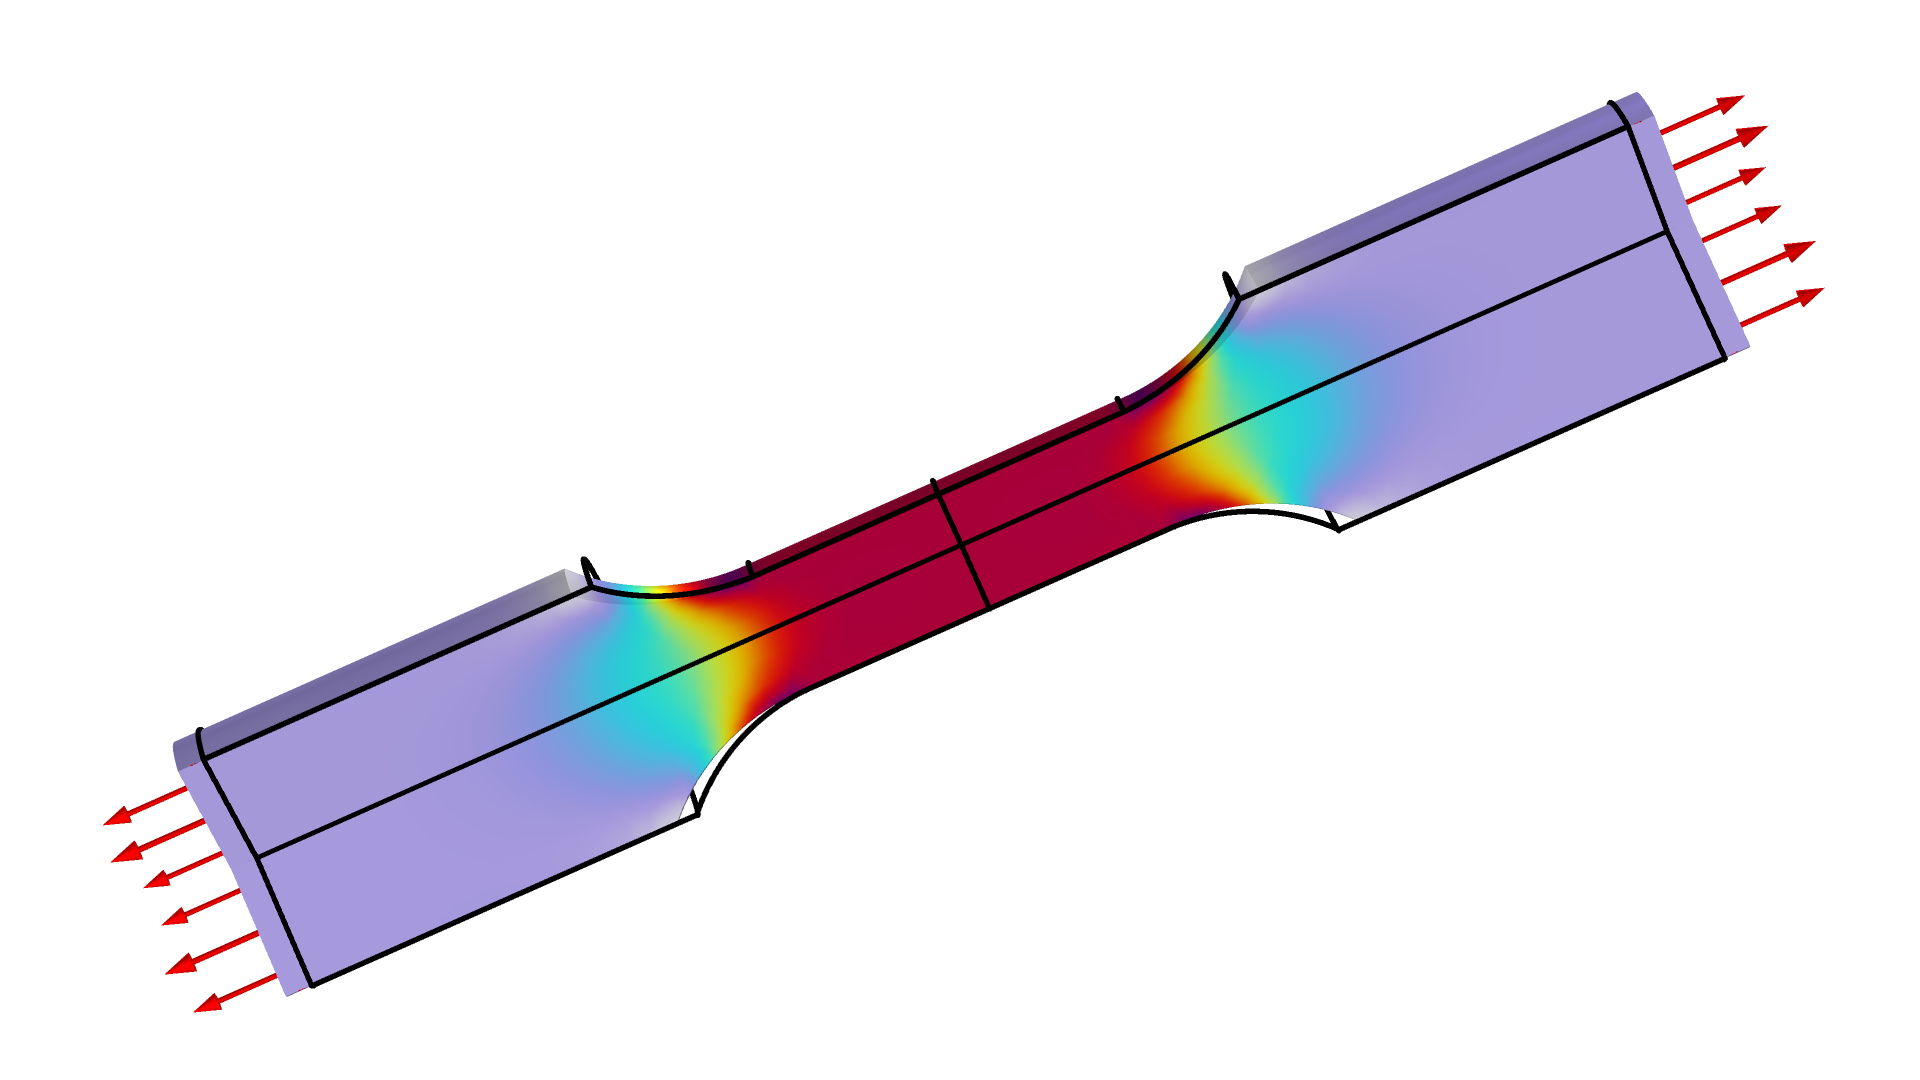 引張試験の応力を示すモデル. 両端が紫色で外側に矢印があり, 中央が赤色になっています.